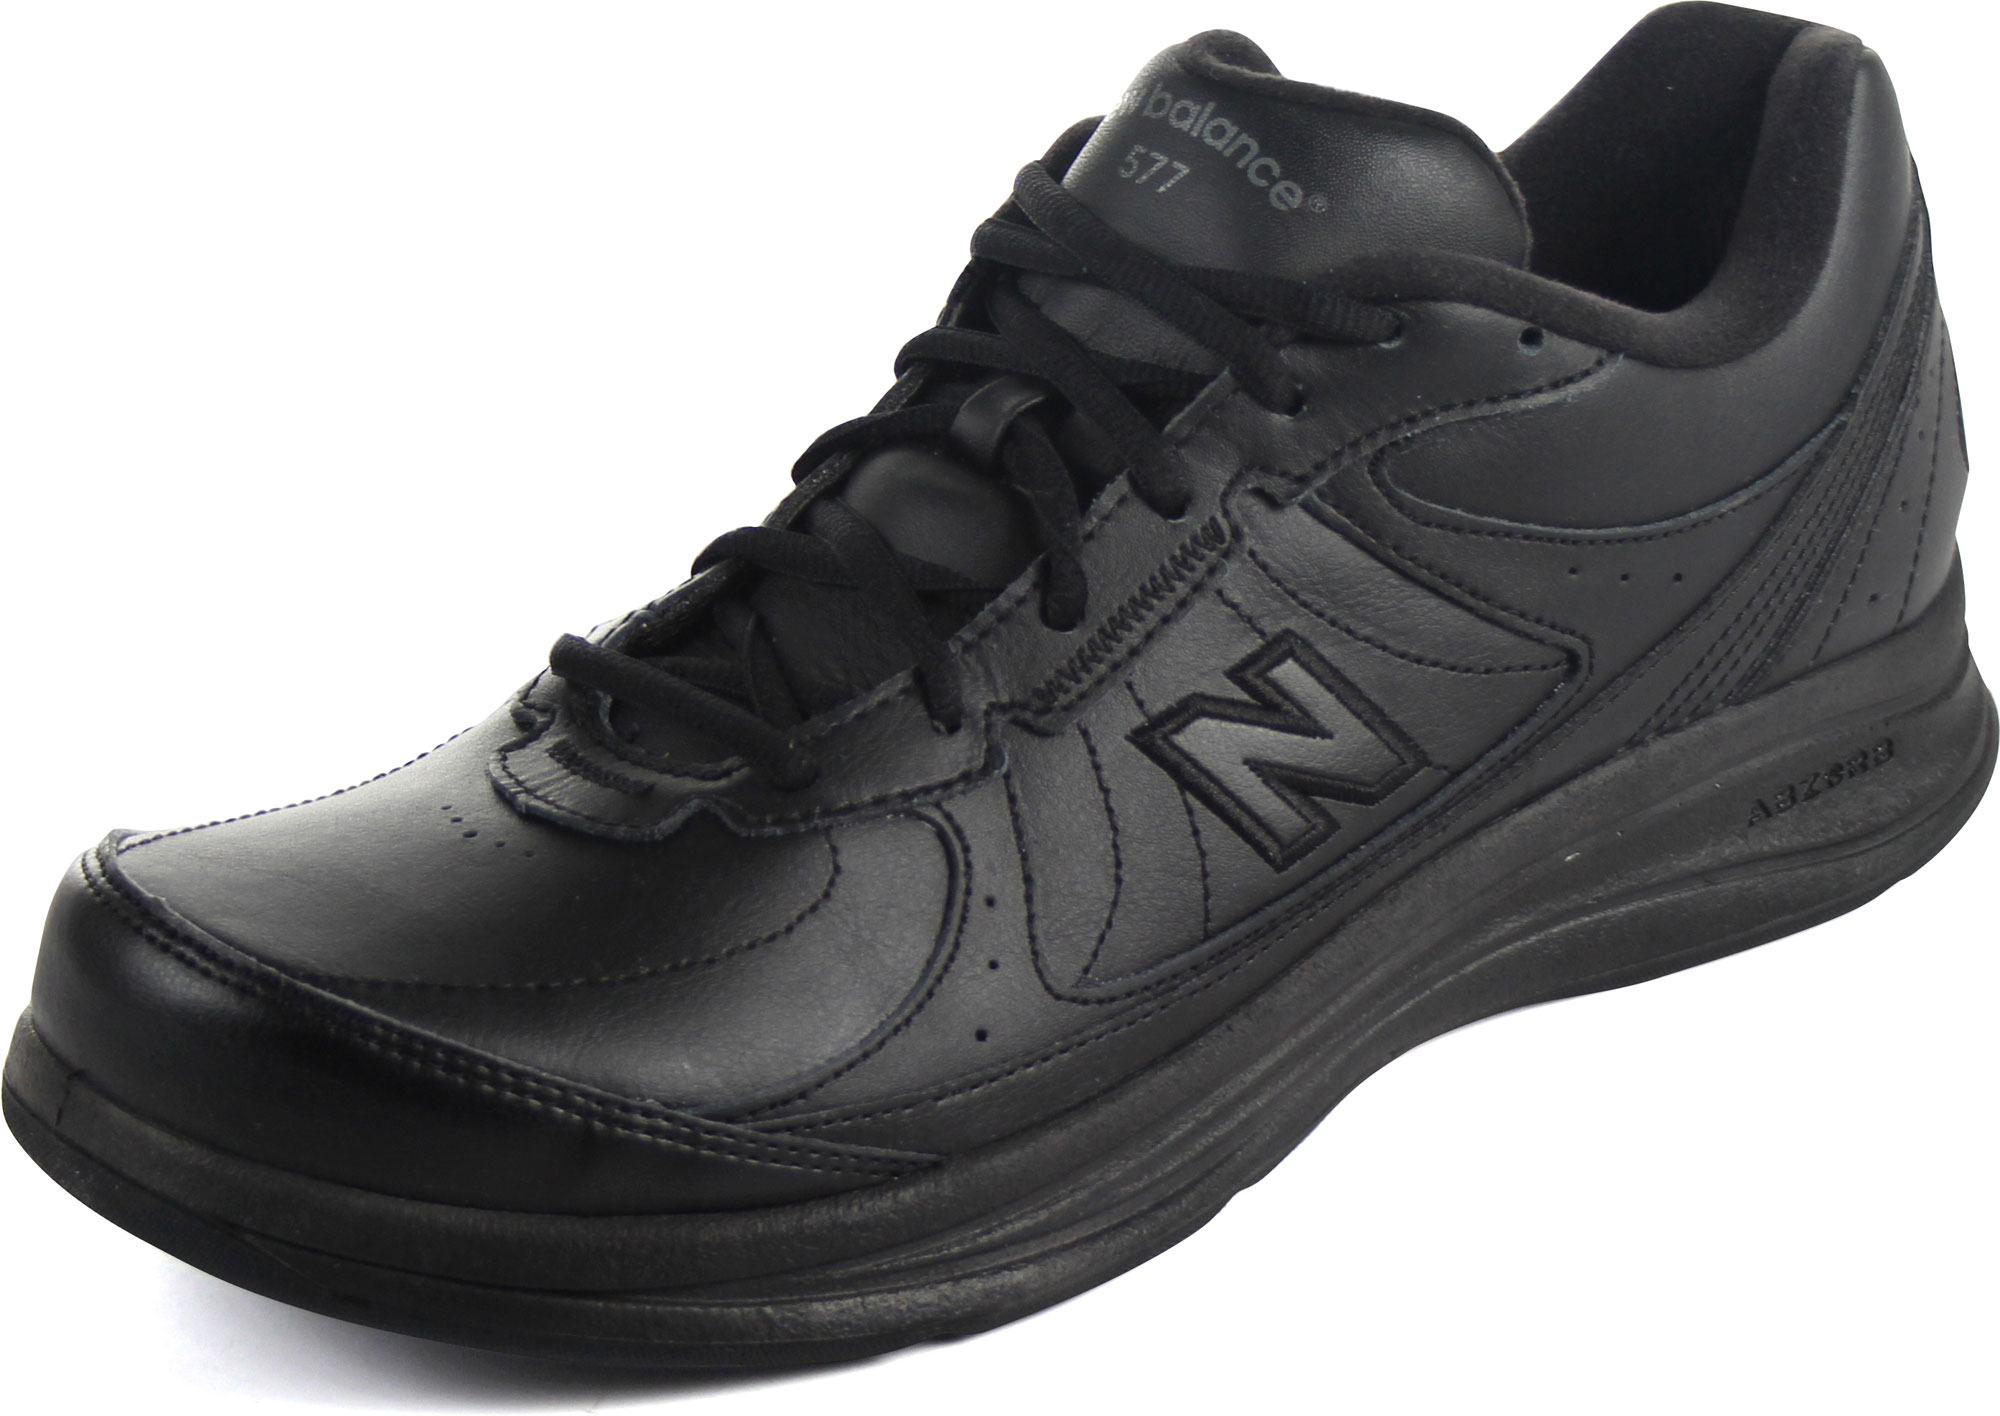 New Balance - Mens 577 Cushioning Walking Shoes